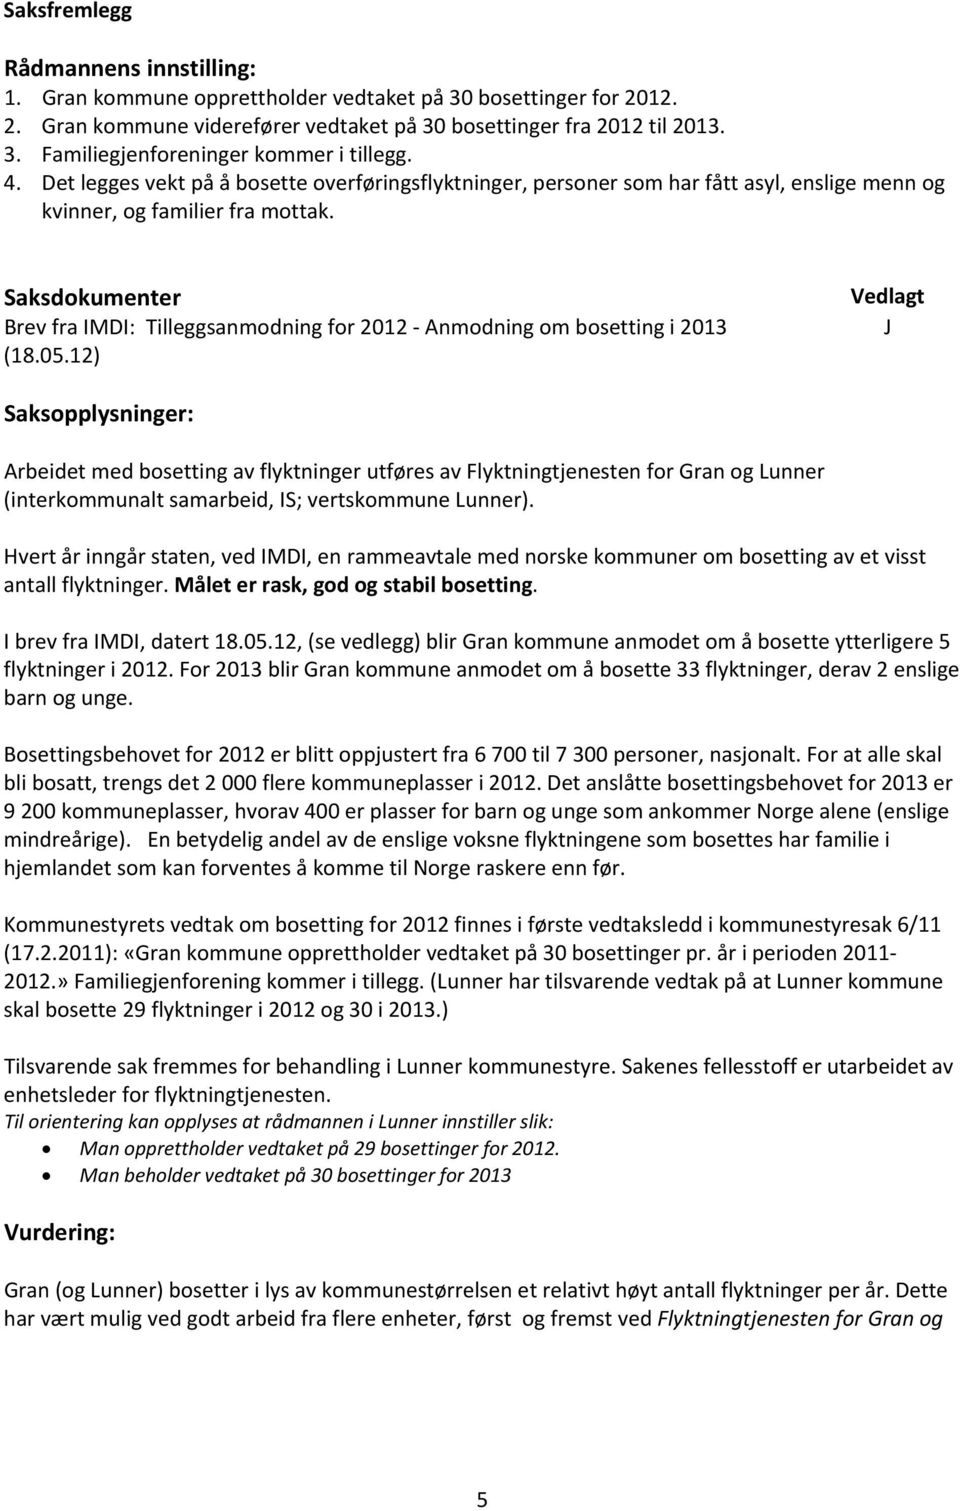 Saksdokumenter Brev fra IMDI: Tilleggsanmodning for 2012 Anmodning om bosetting i 2013 (18.05.